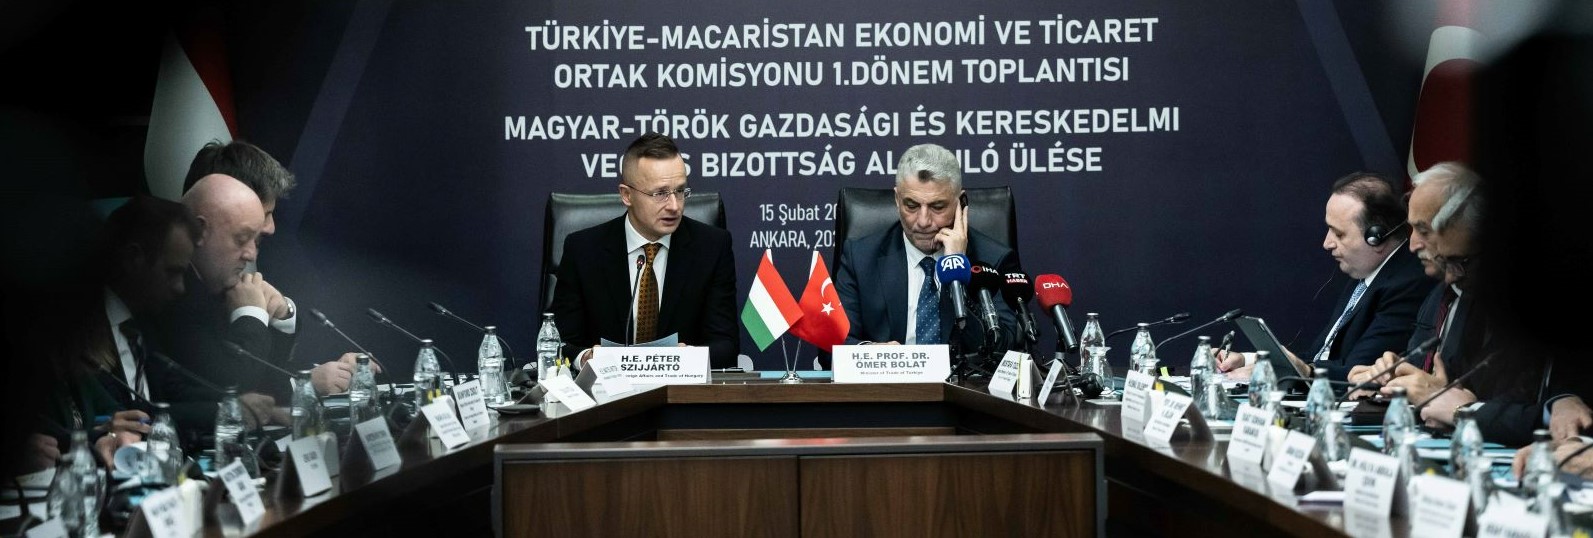 Dübörögnek a magyar-török gazdasági kapcsolatok: rekordot döntött tavaly a magyar-török kereskedelmi forgalom